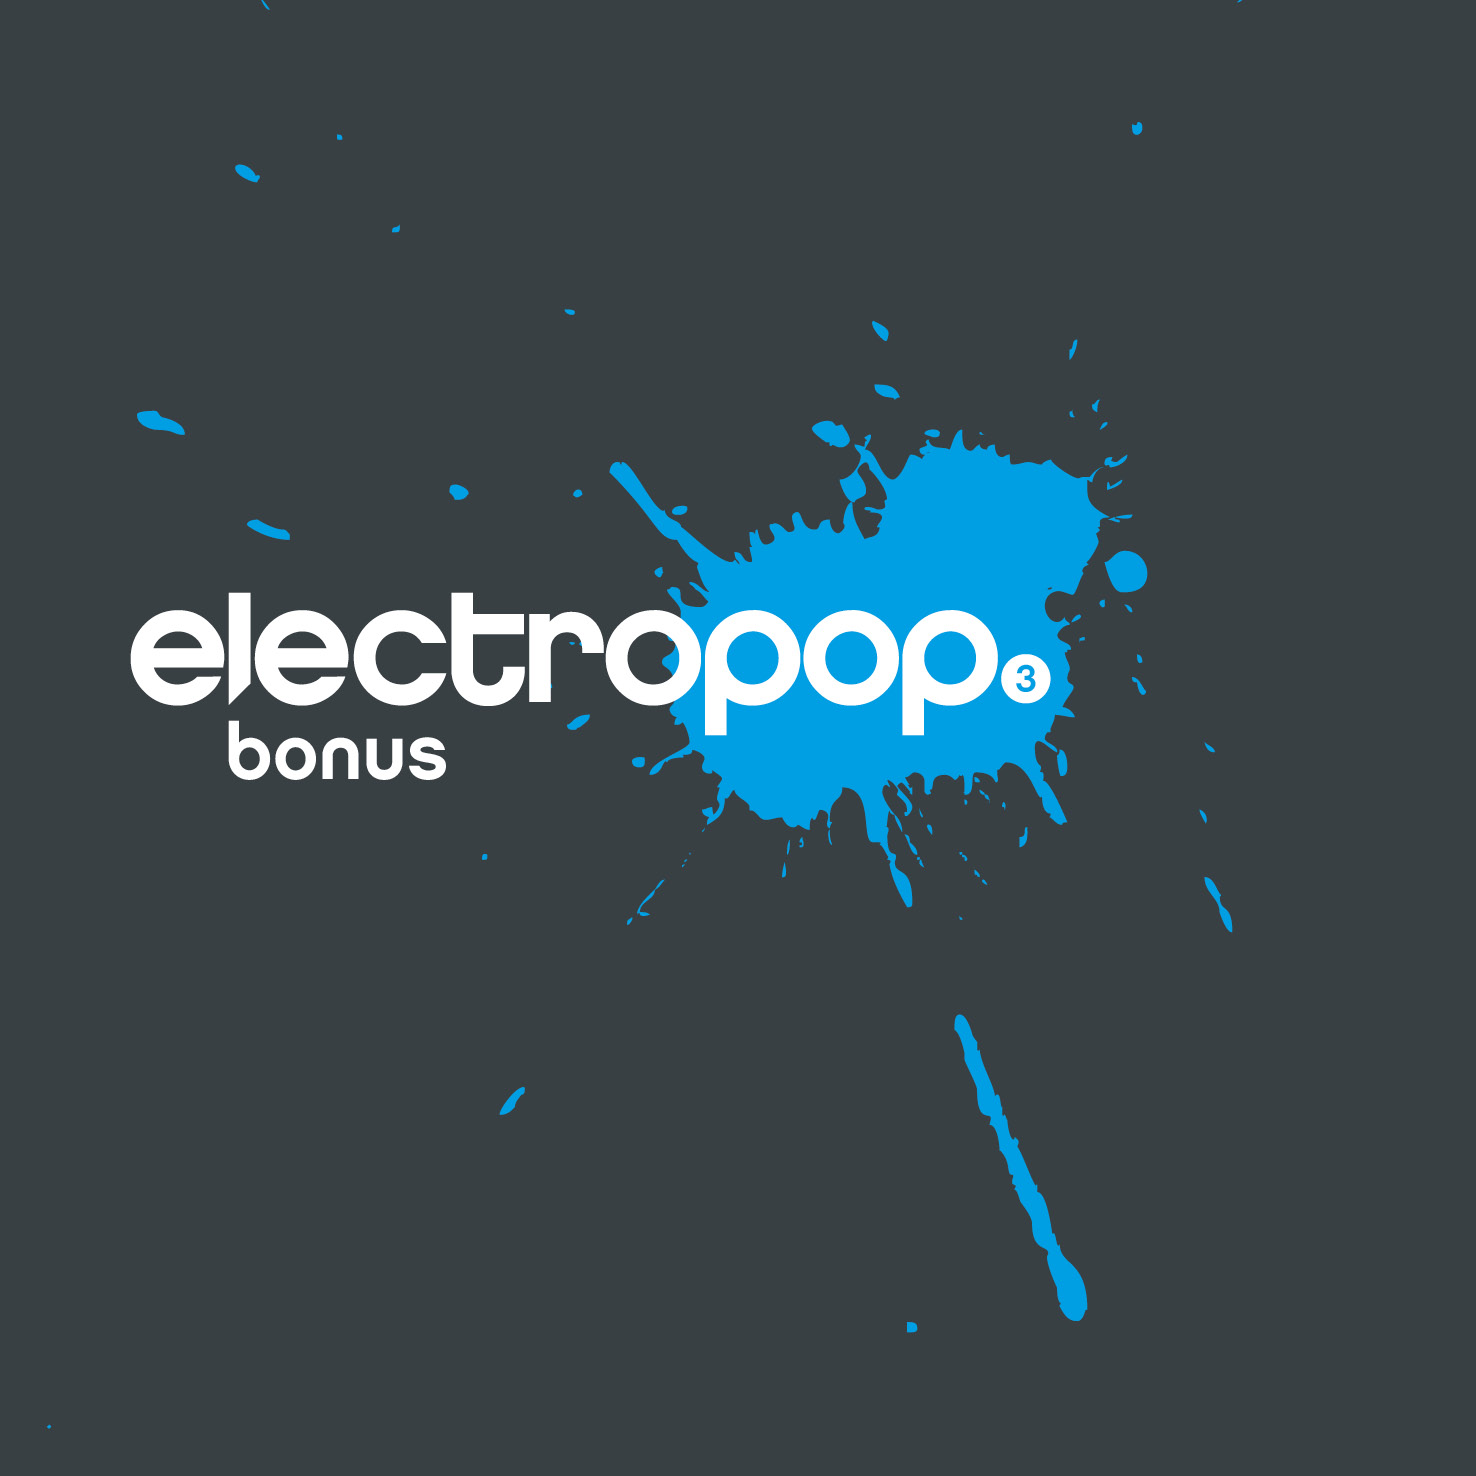 electropop.22 bonus 3